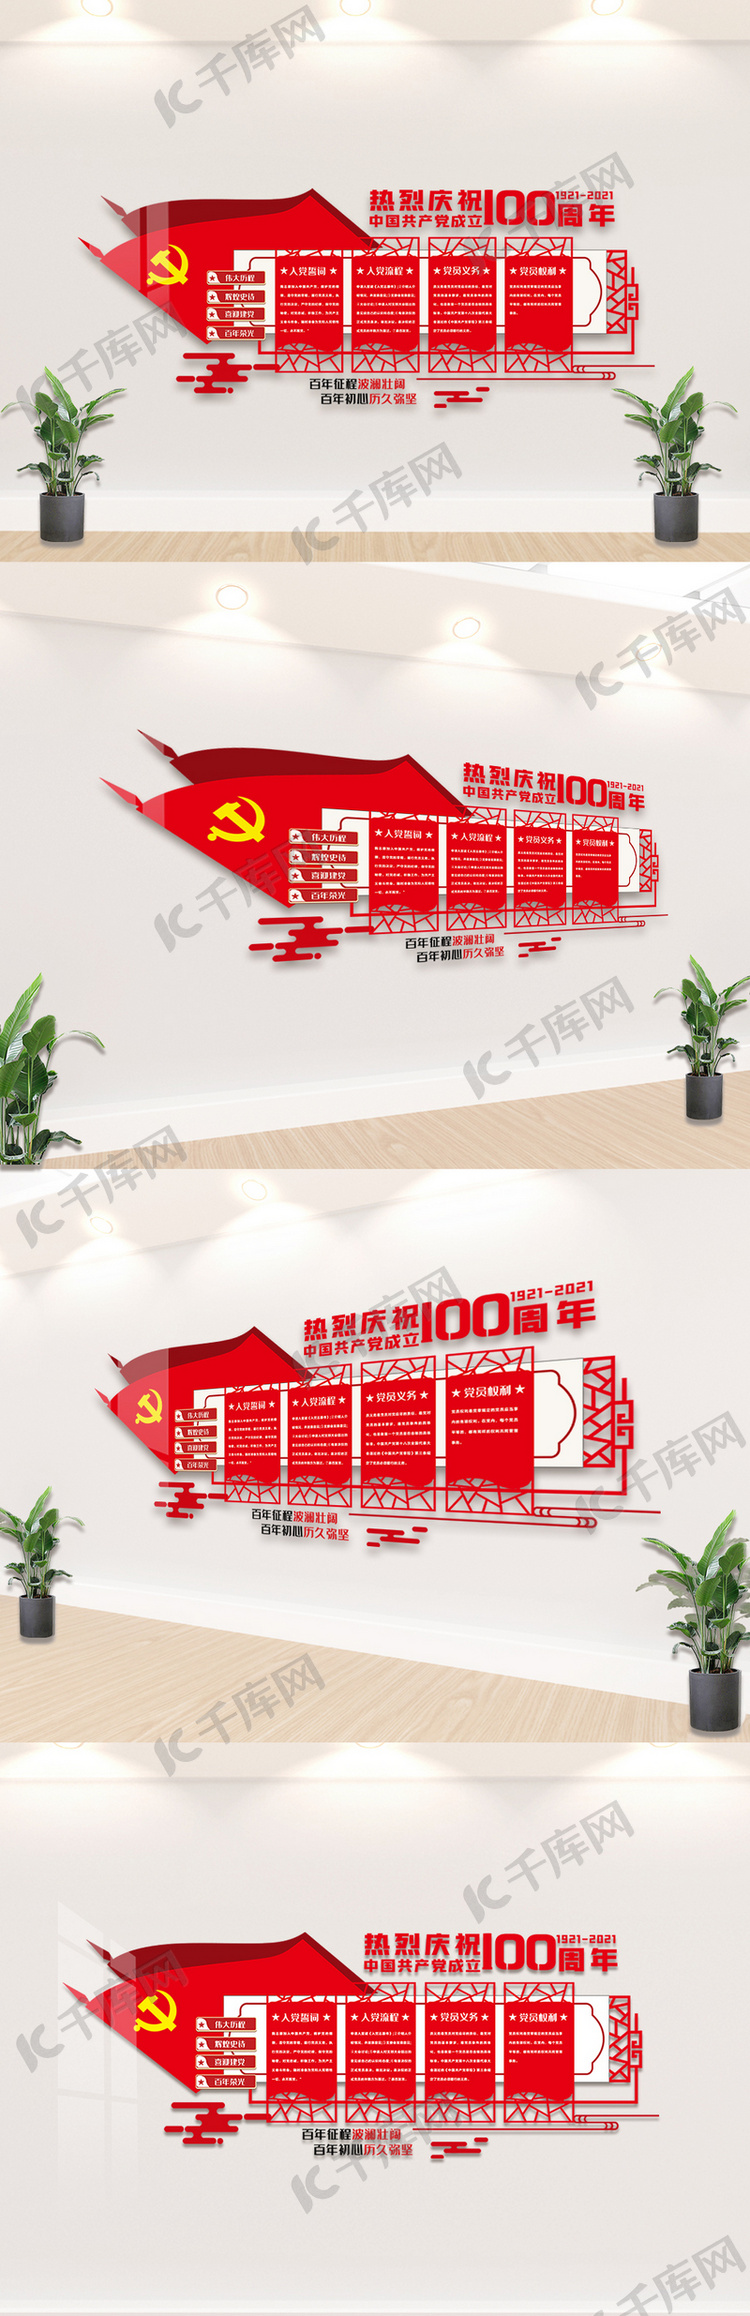 中国共产党建党建党100周年内容文化墙